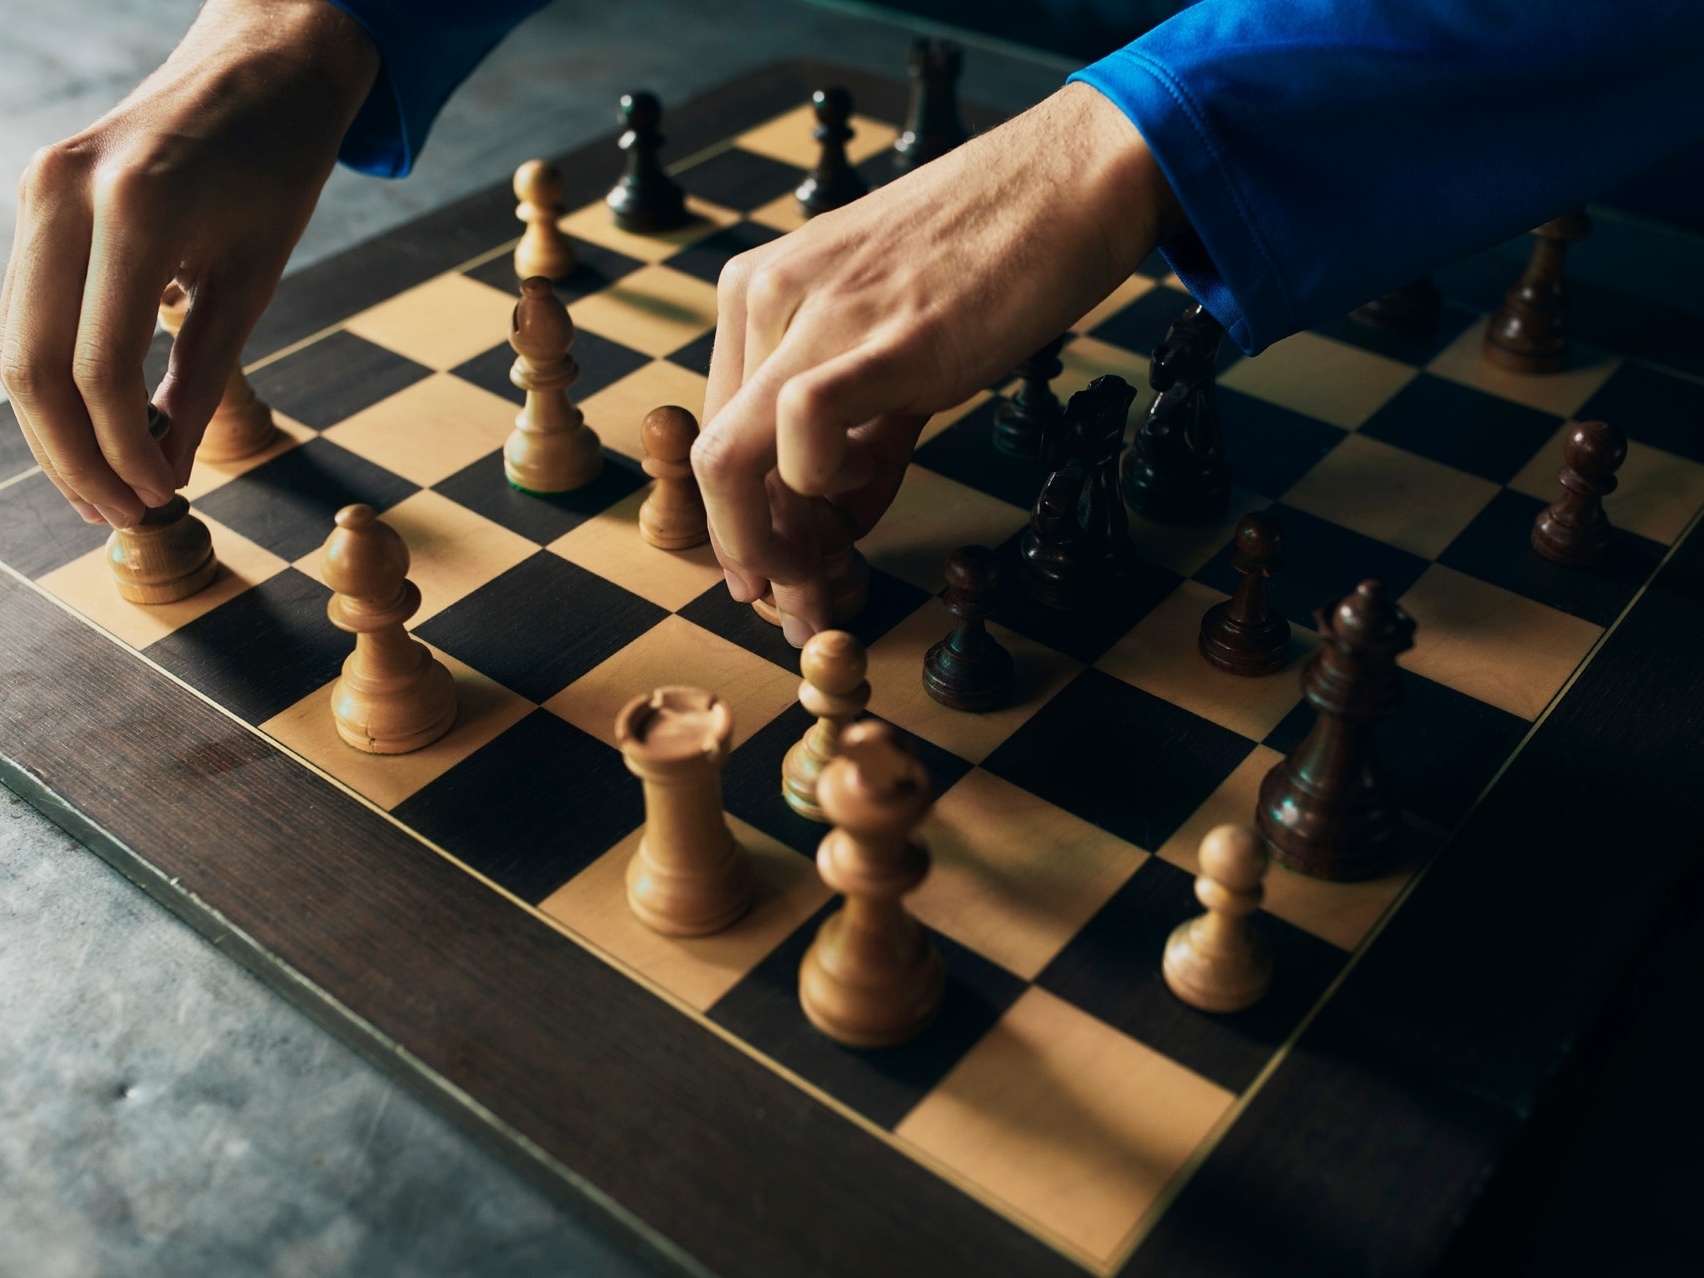 As 10 razões que provam: jogar xadrez aumenta a inteligência dos